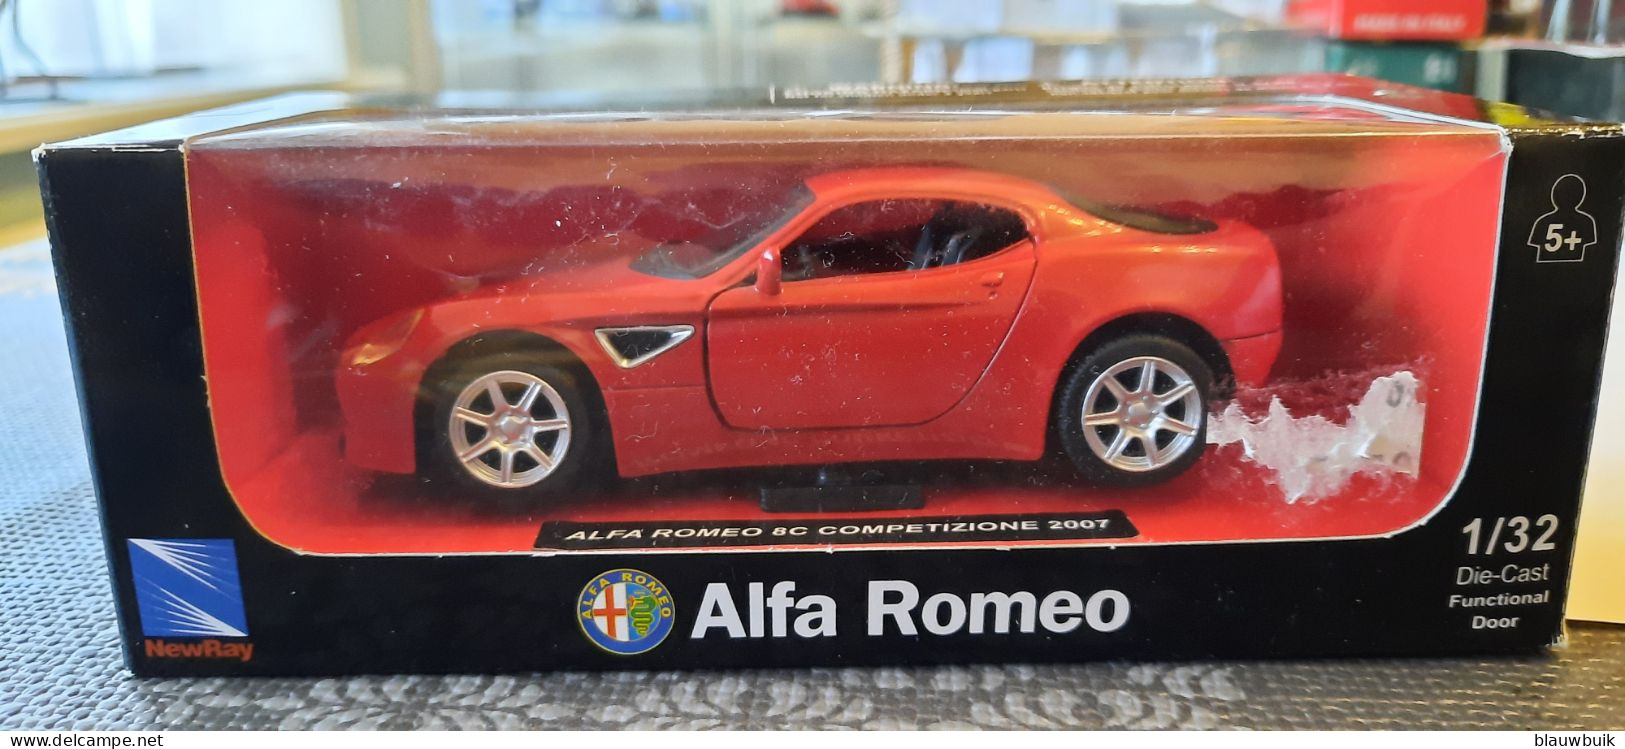 New Ray Alfa Romeo 8C COMPETIZIONE 2006 1/32